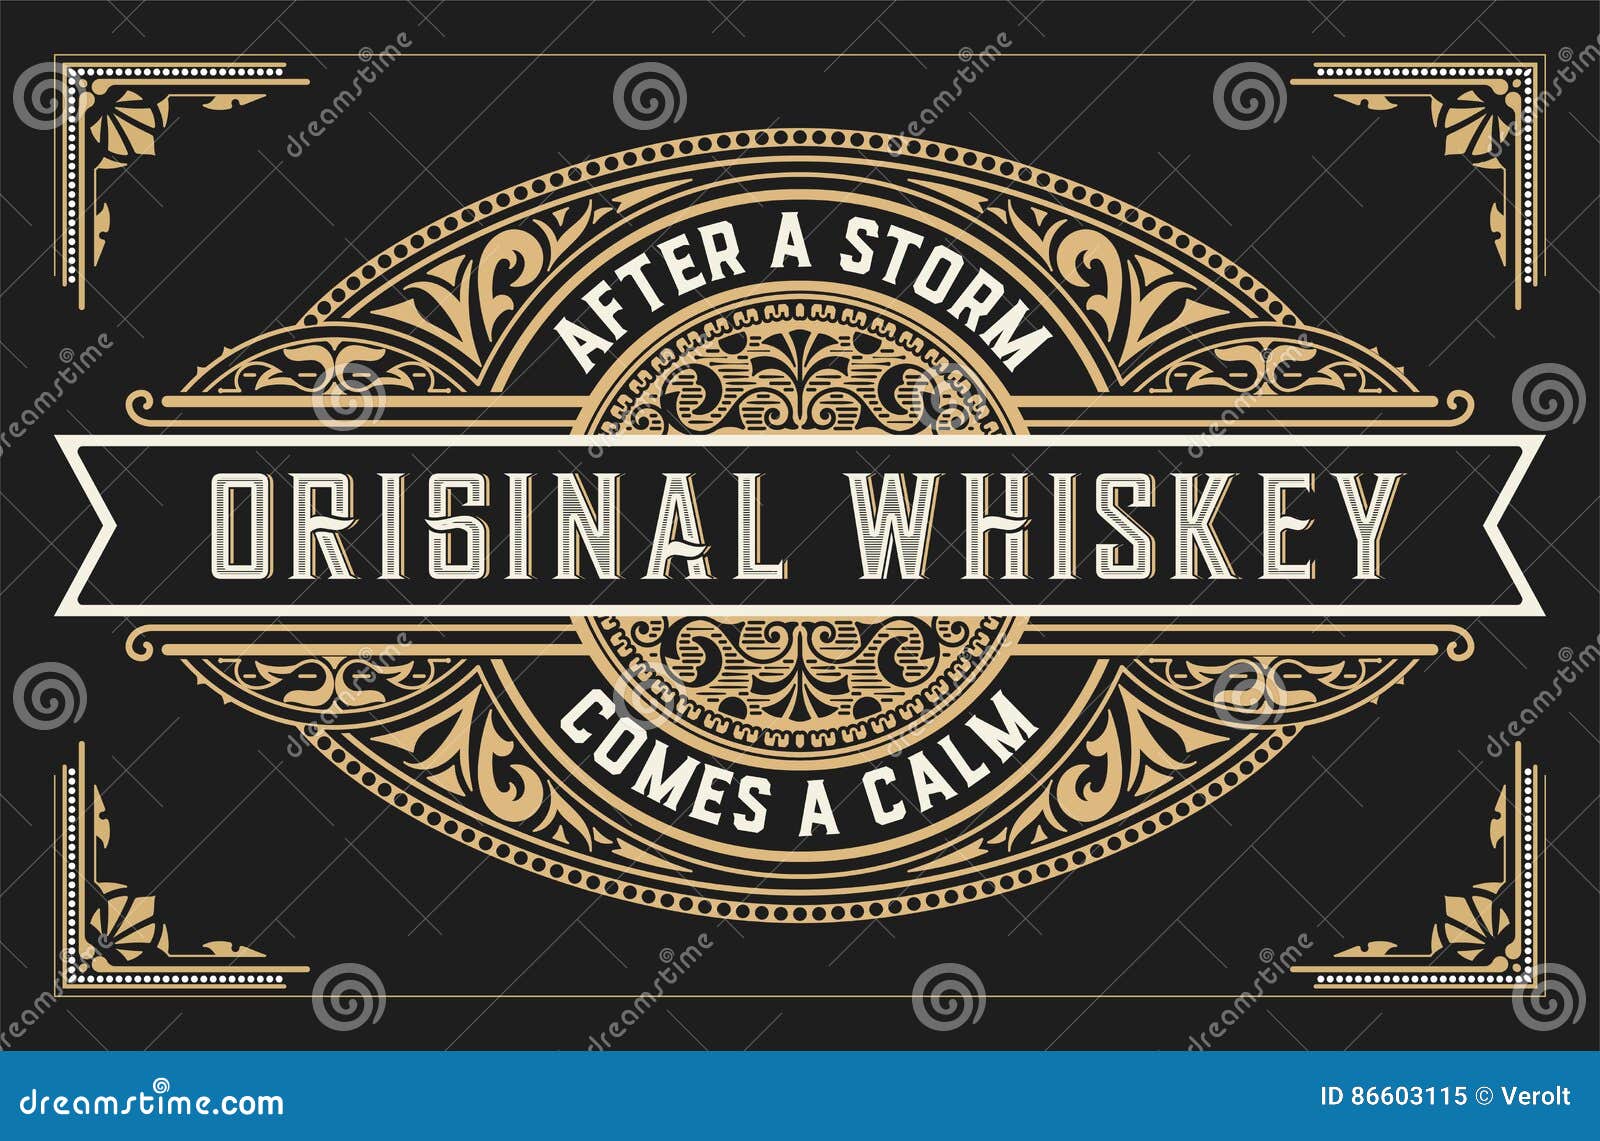 retro whiskey label.